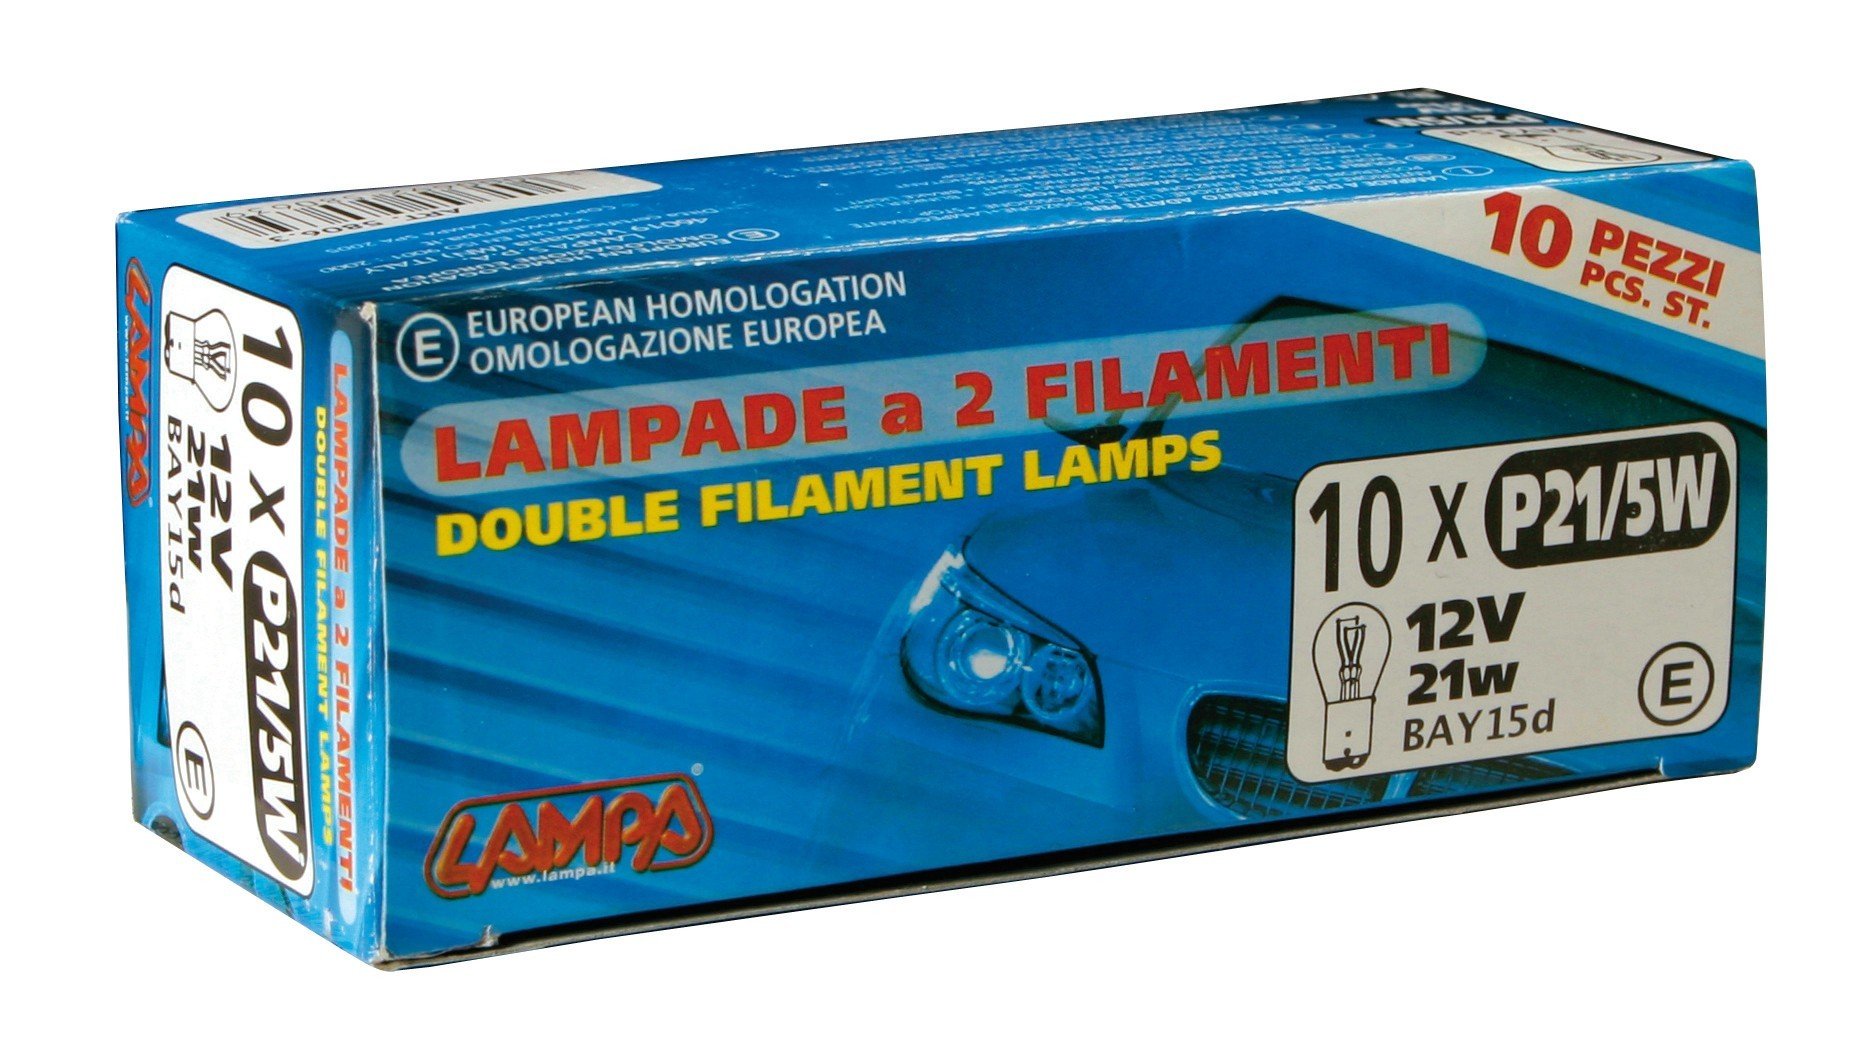 24V Lampada 2 filamenti - P21 5W - 21 5W - BAY15d - 2 pz - D Blister